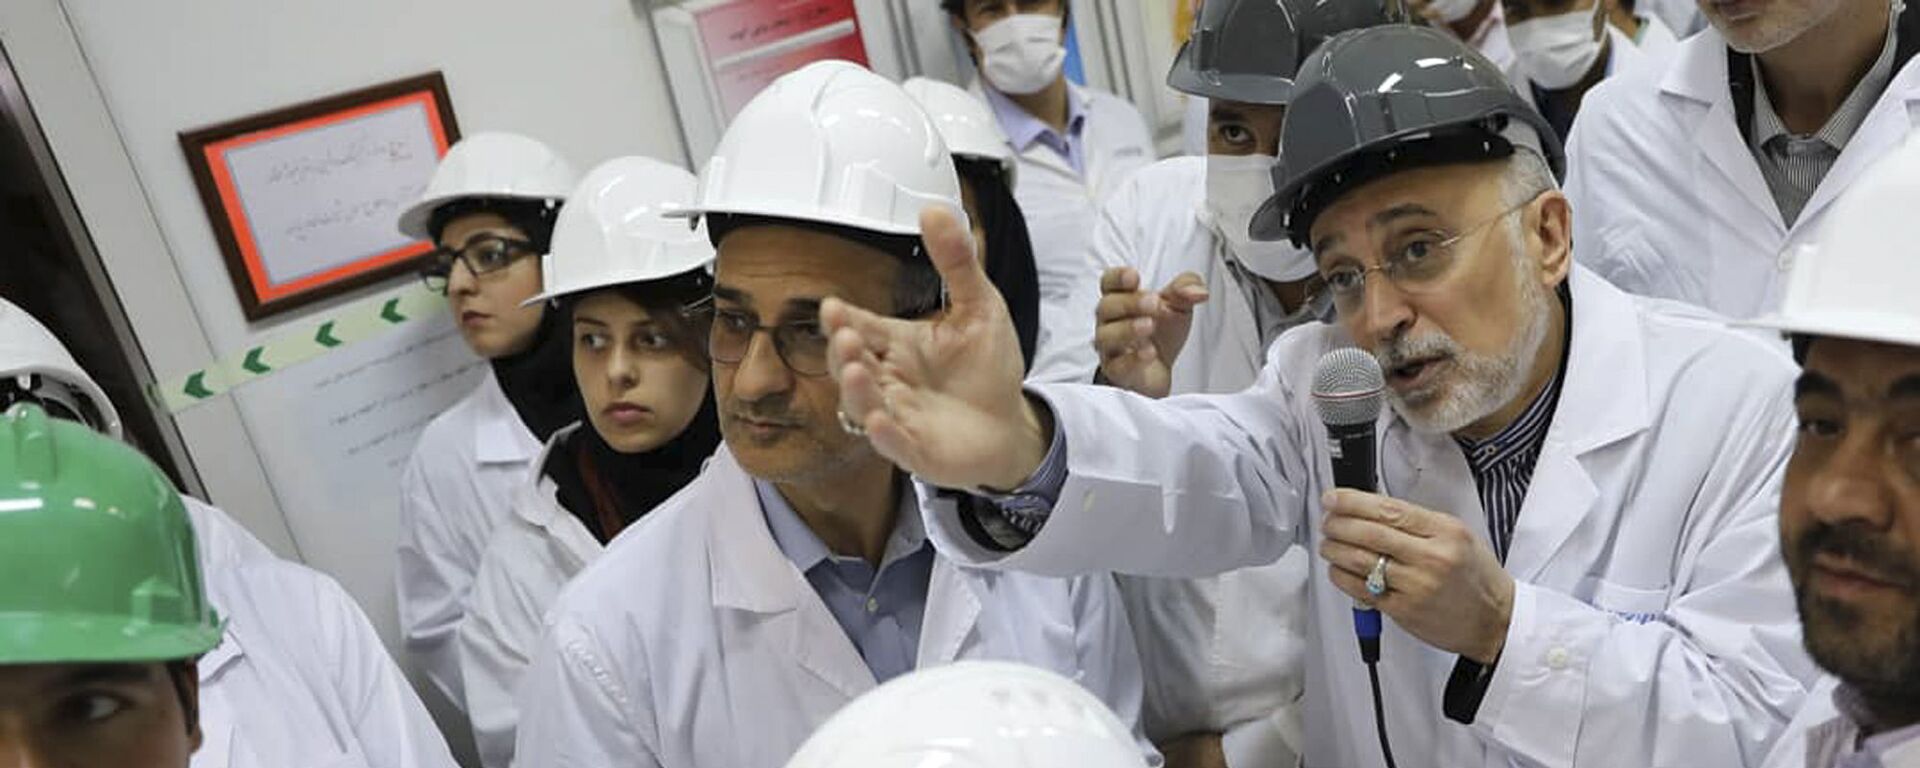 علي أكبر صالحي رئيس منظمة الطاقة النووية الإيرانية يتحدث مع وسائل الإعلام أثناء زيارته لمرفق تخصيب نطنز وسط إيران - سبوتنيك عربي, 1920, 22.03.2021